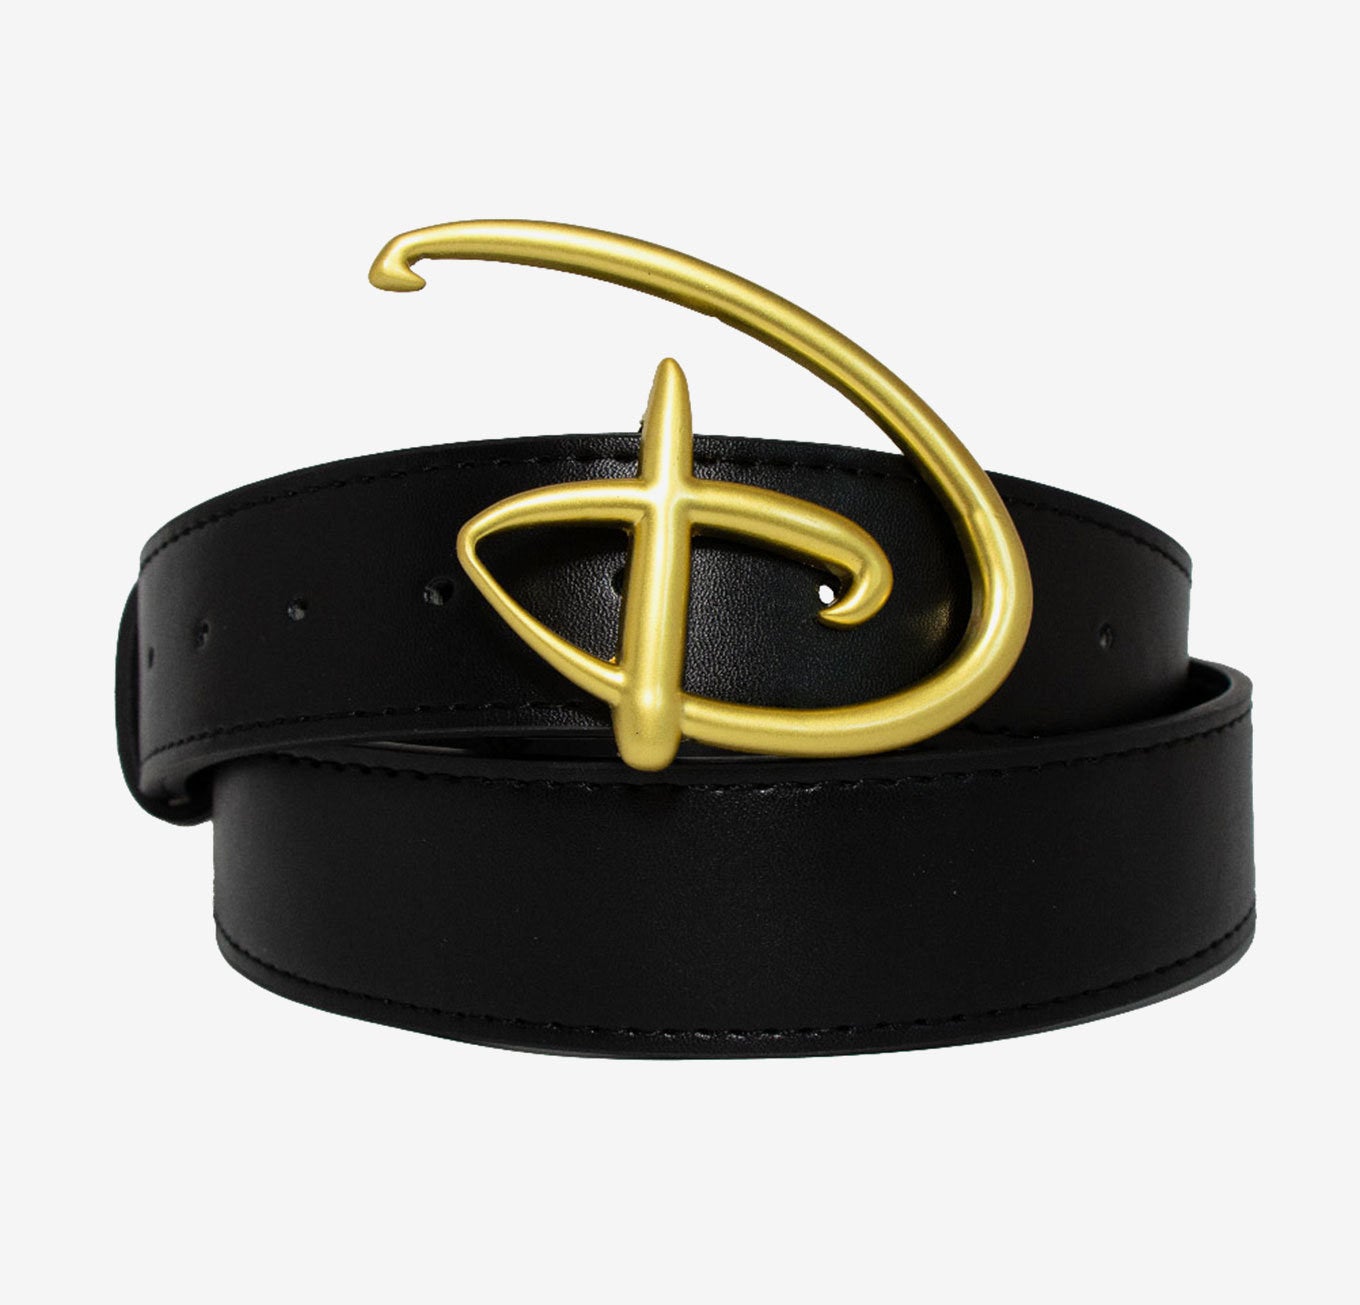 The black belt with a gold Disney &quot;D&quot; buckle